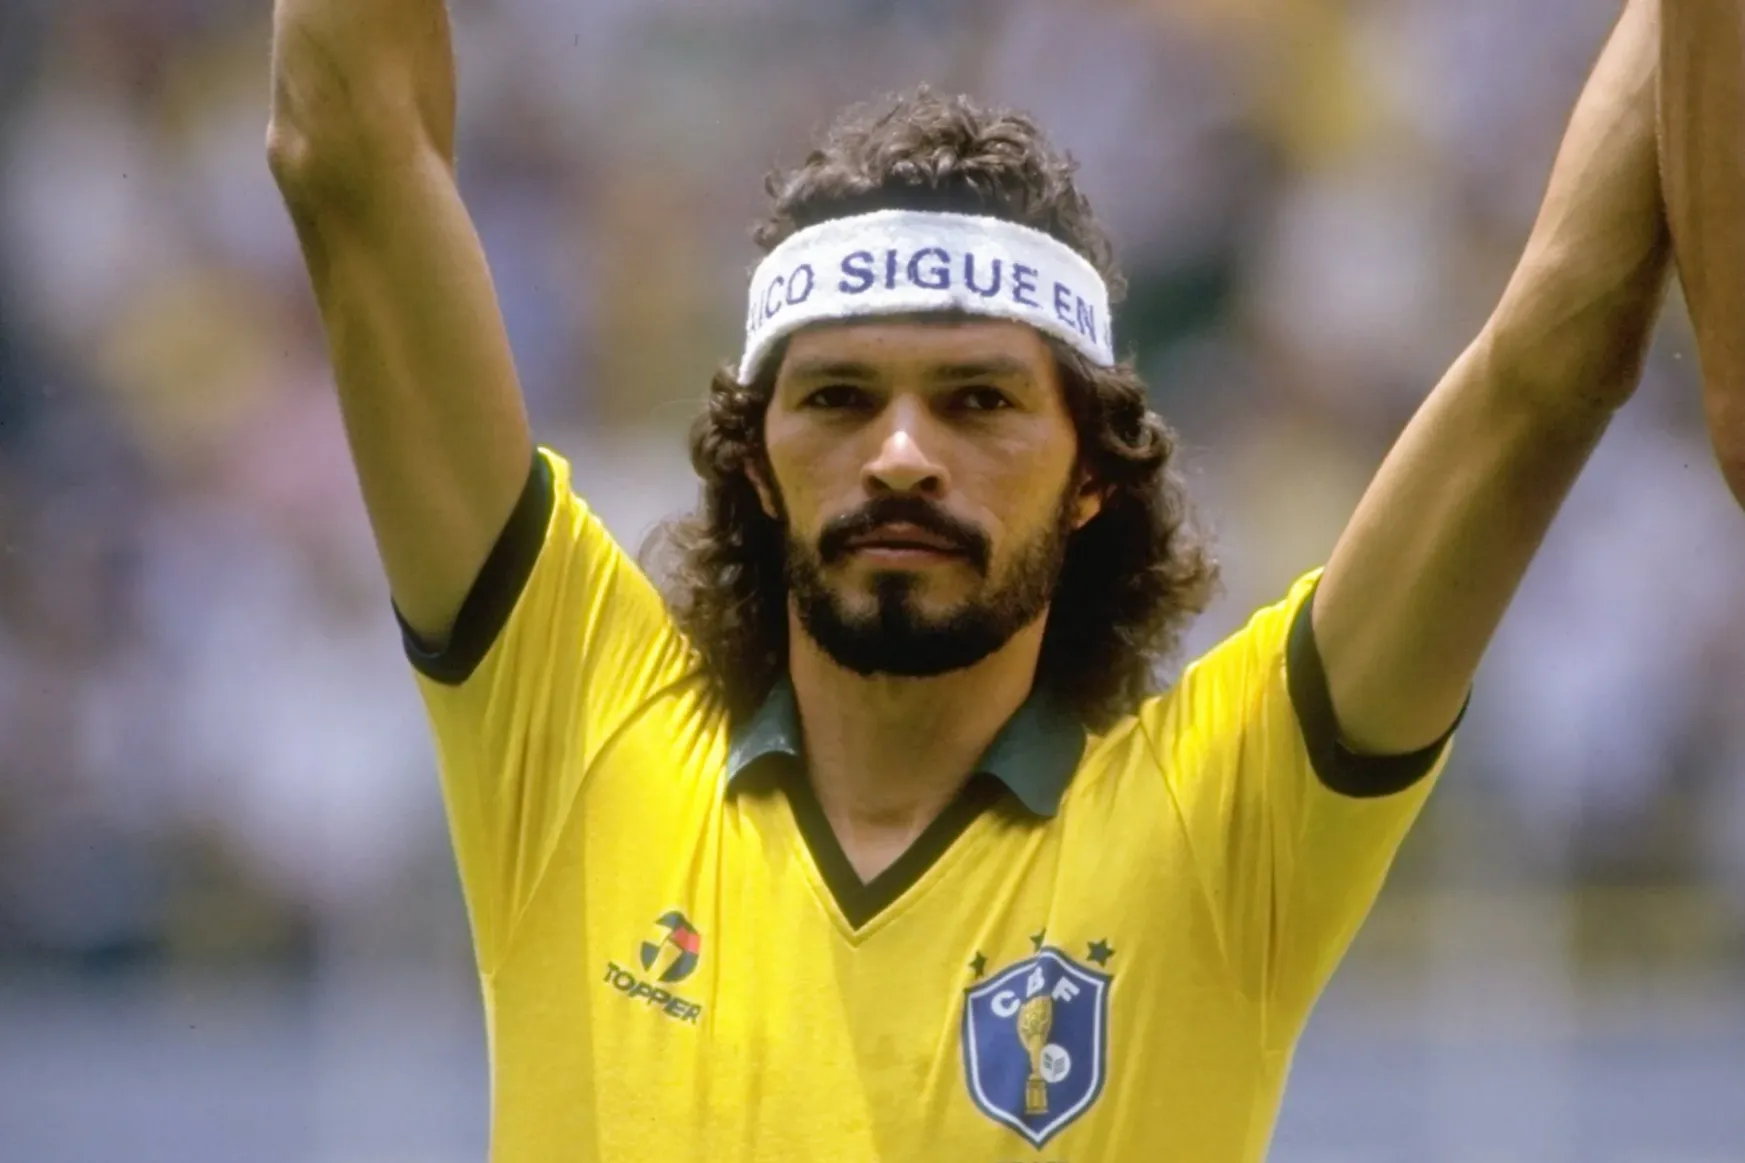 A brazil Sócratesről elnevezett díj ösztönzi társadalmi szerepvállalásra a focistákat